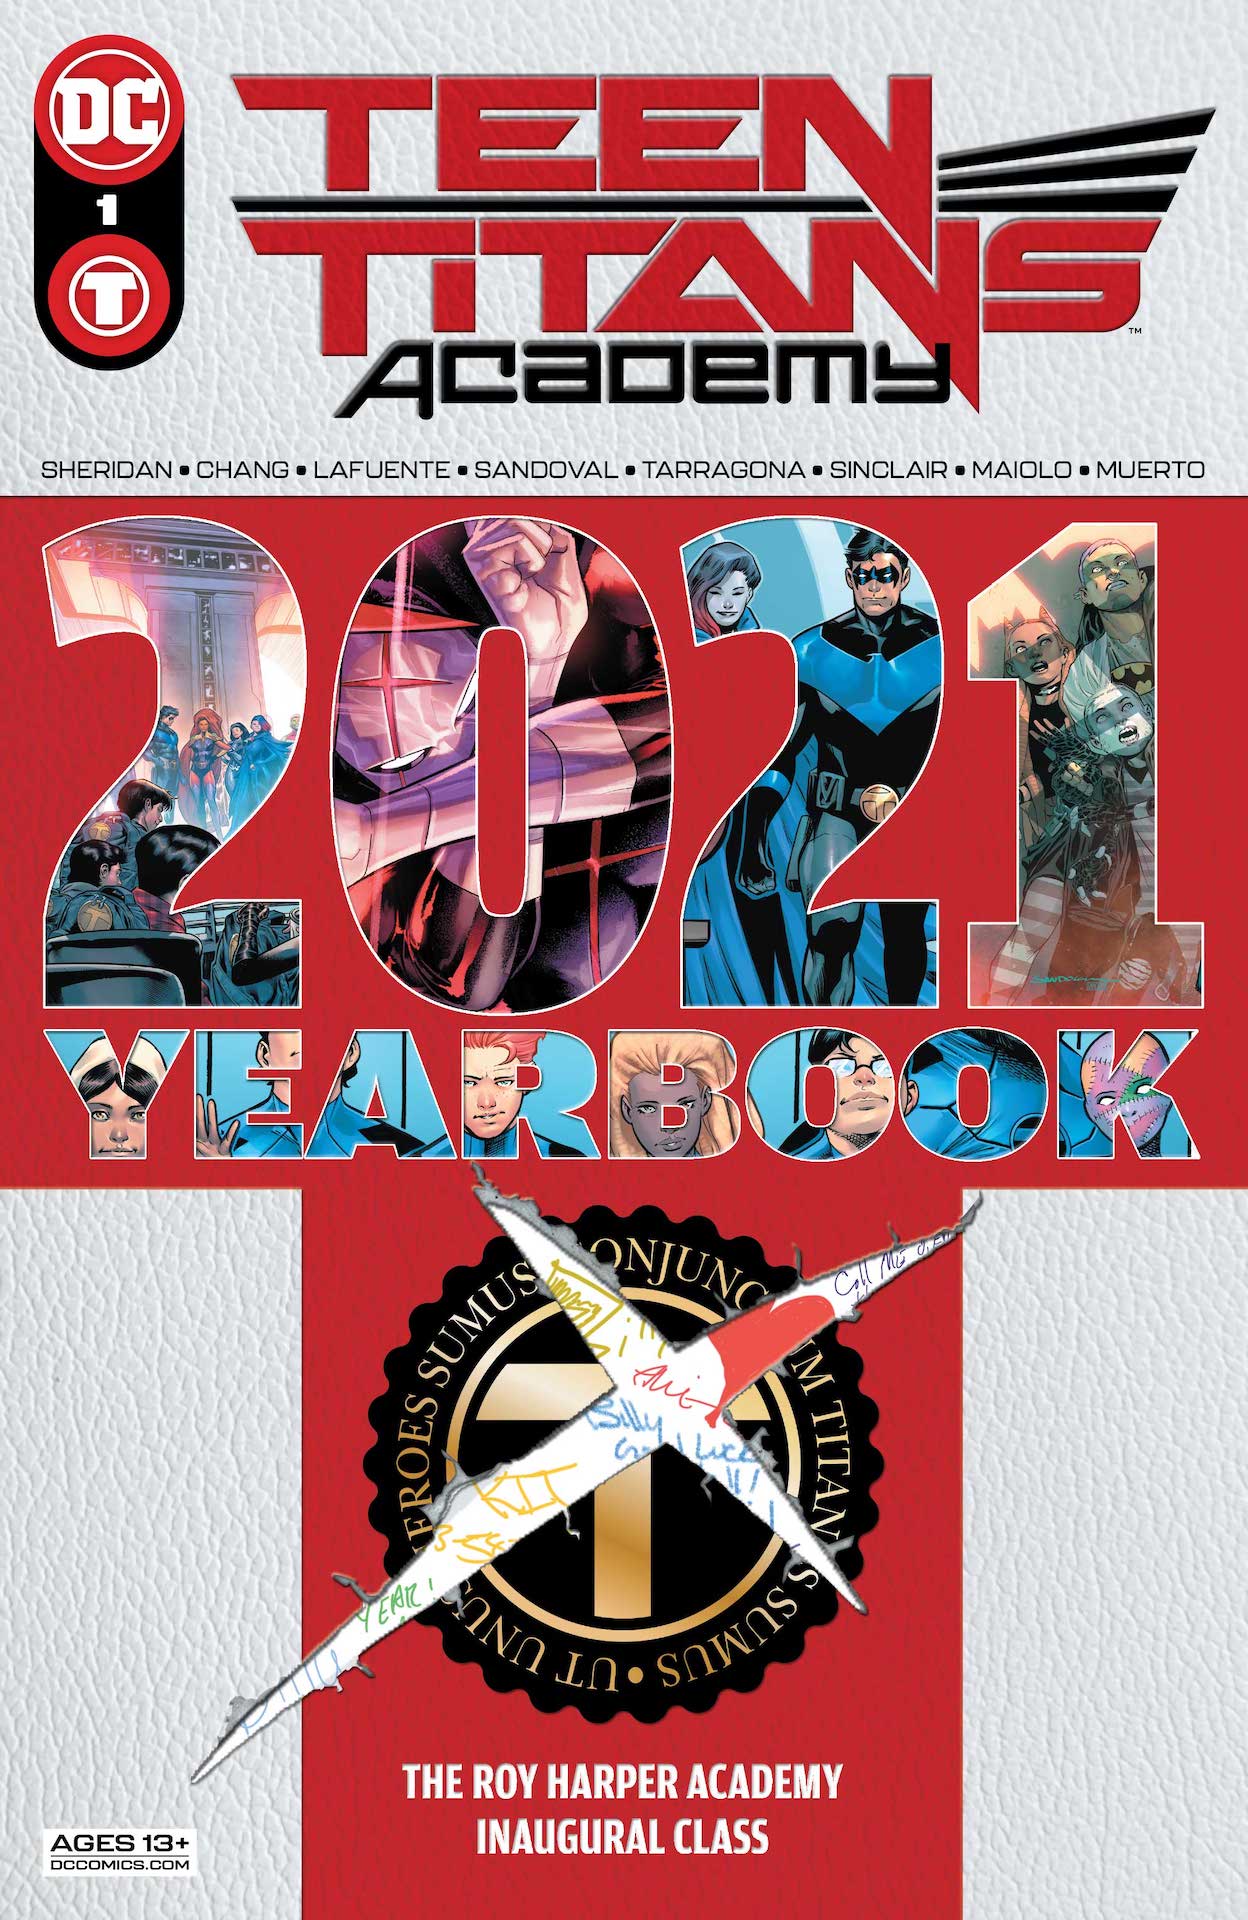 Teen-Titans-Academy-2021-Yearbook-1-1